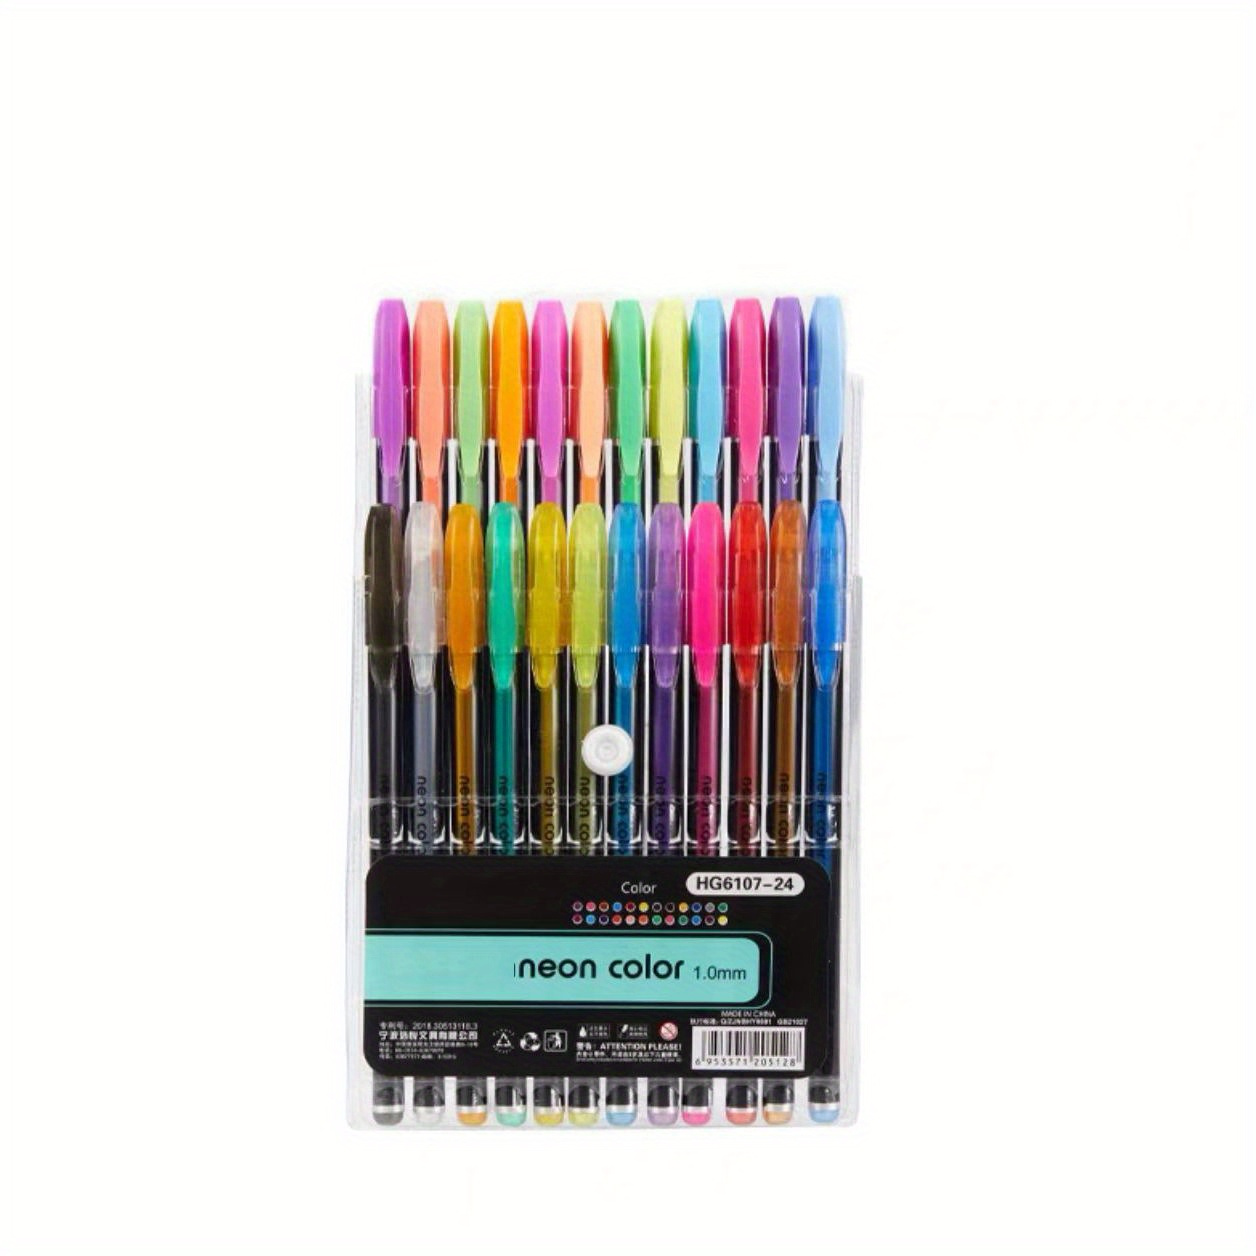 glitter (no duplicates) gel drawing pen